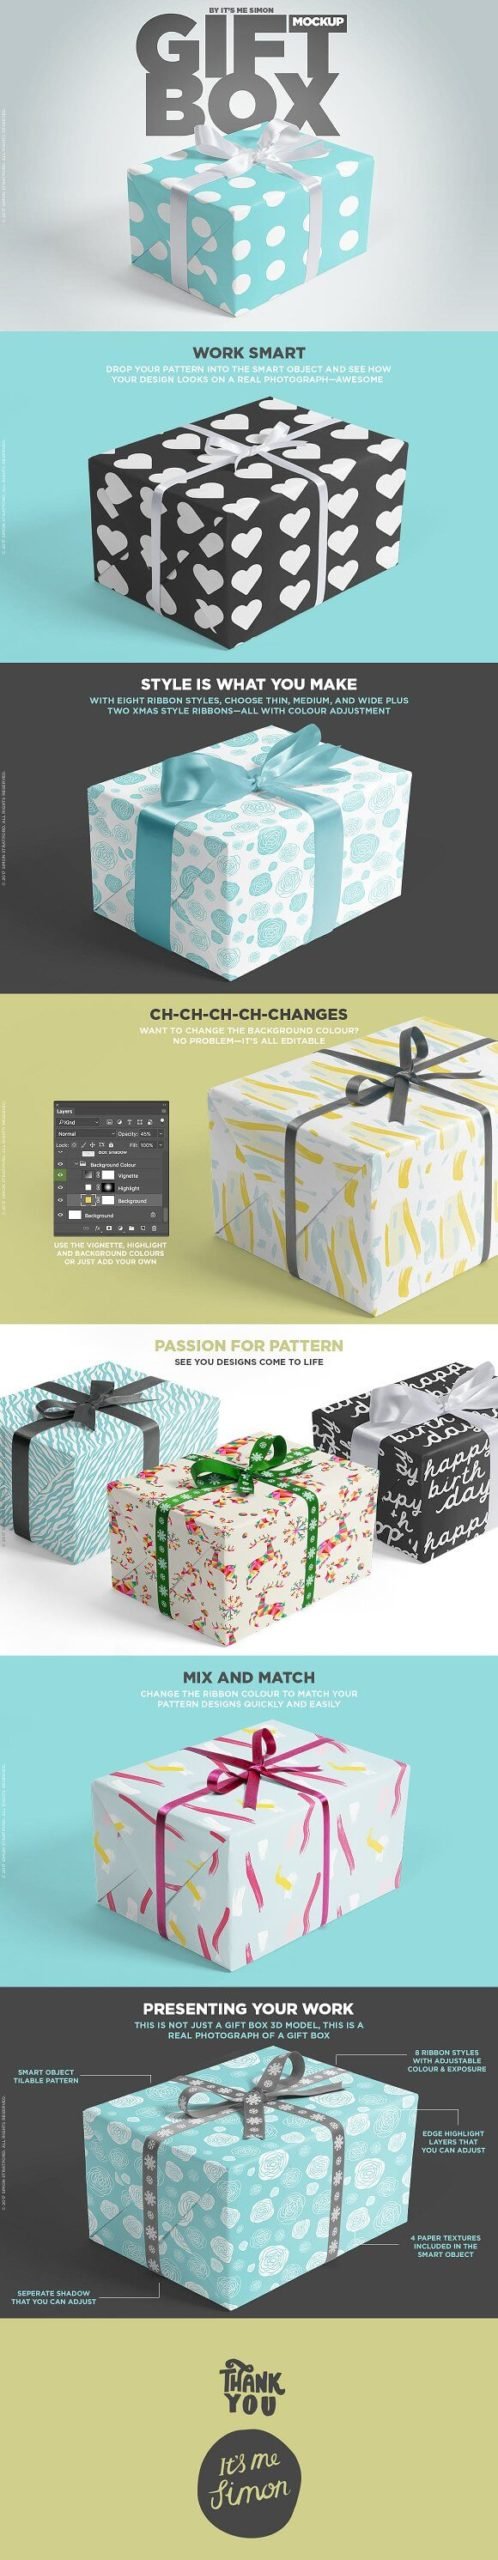 Square Gift Box Mockup PSD: